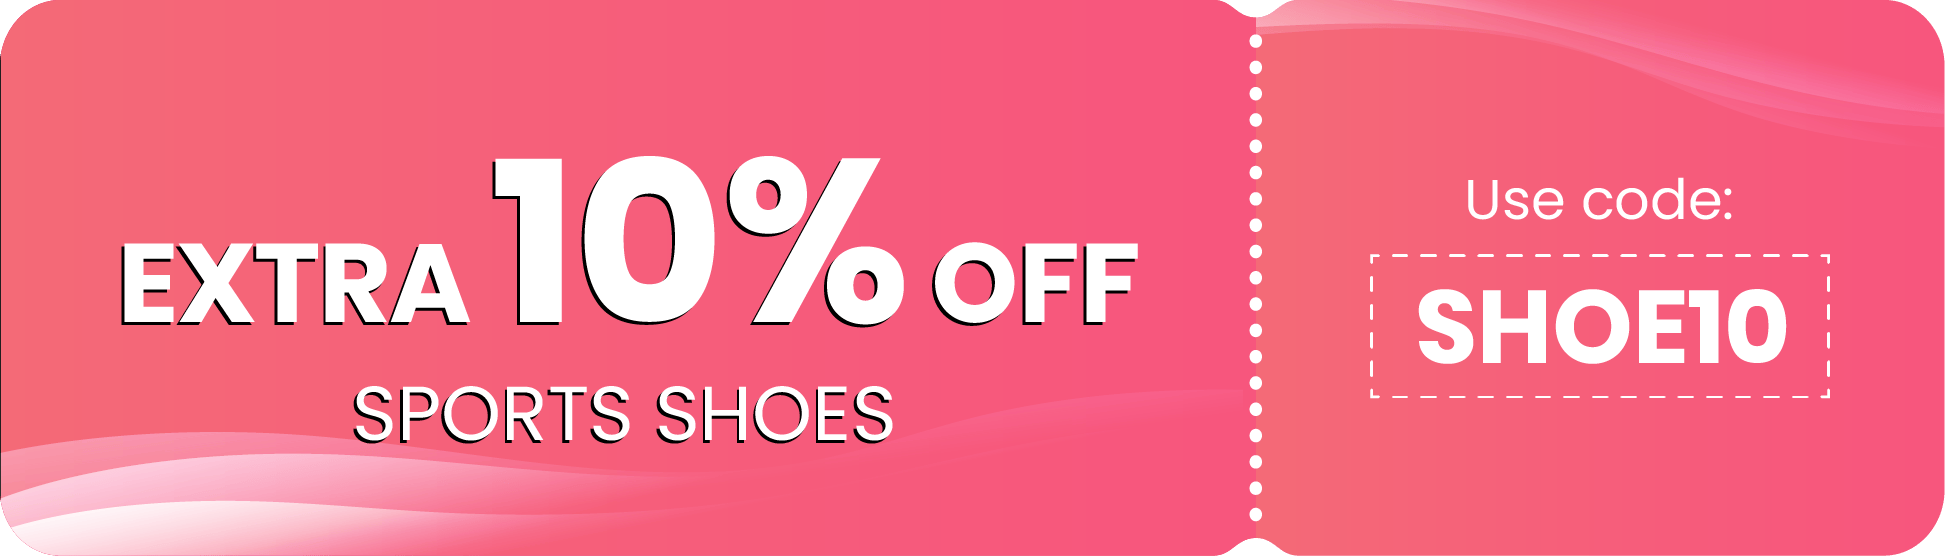 Sports Shoes upto 32% off + Extra 10% off Use code: SHOE10 Uniket